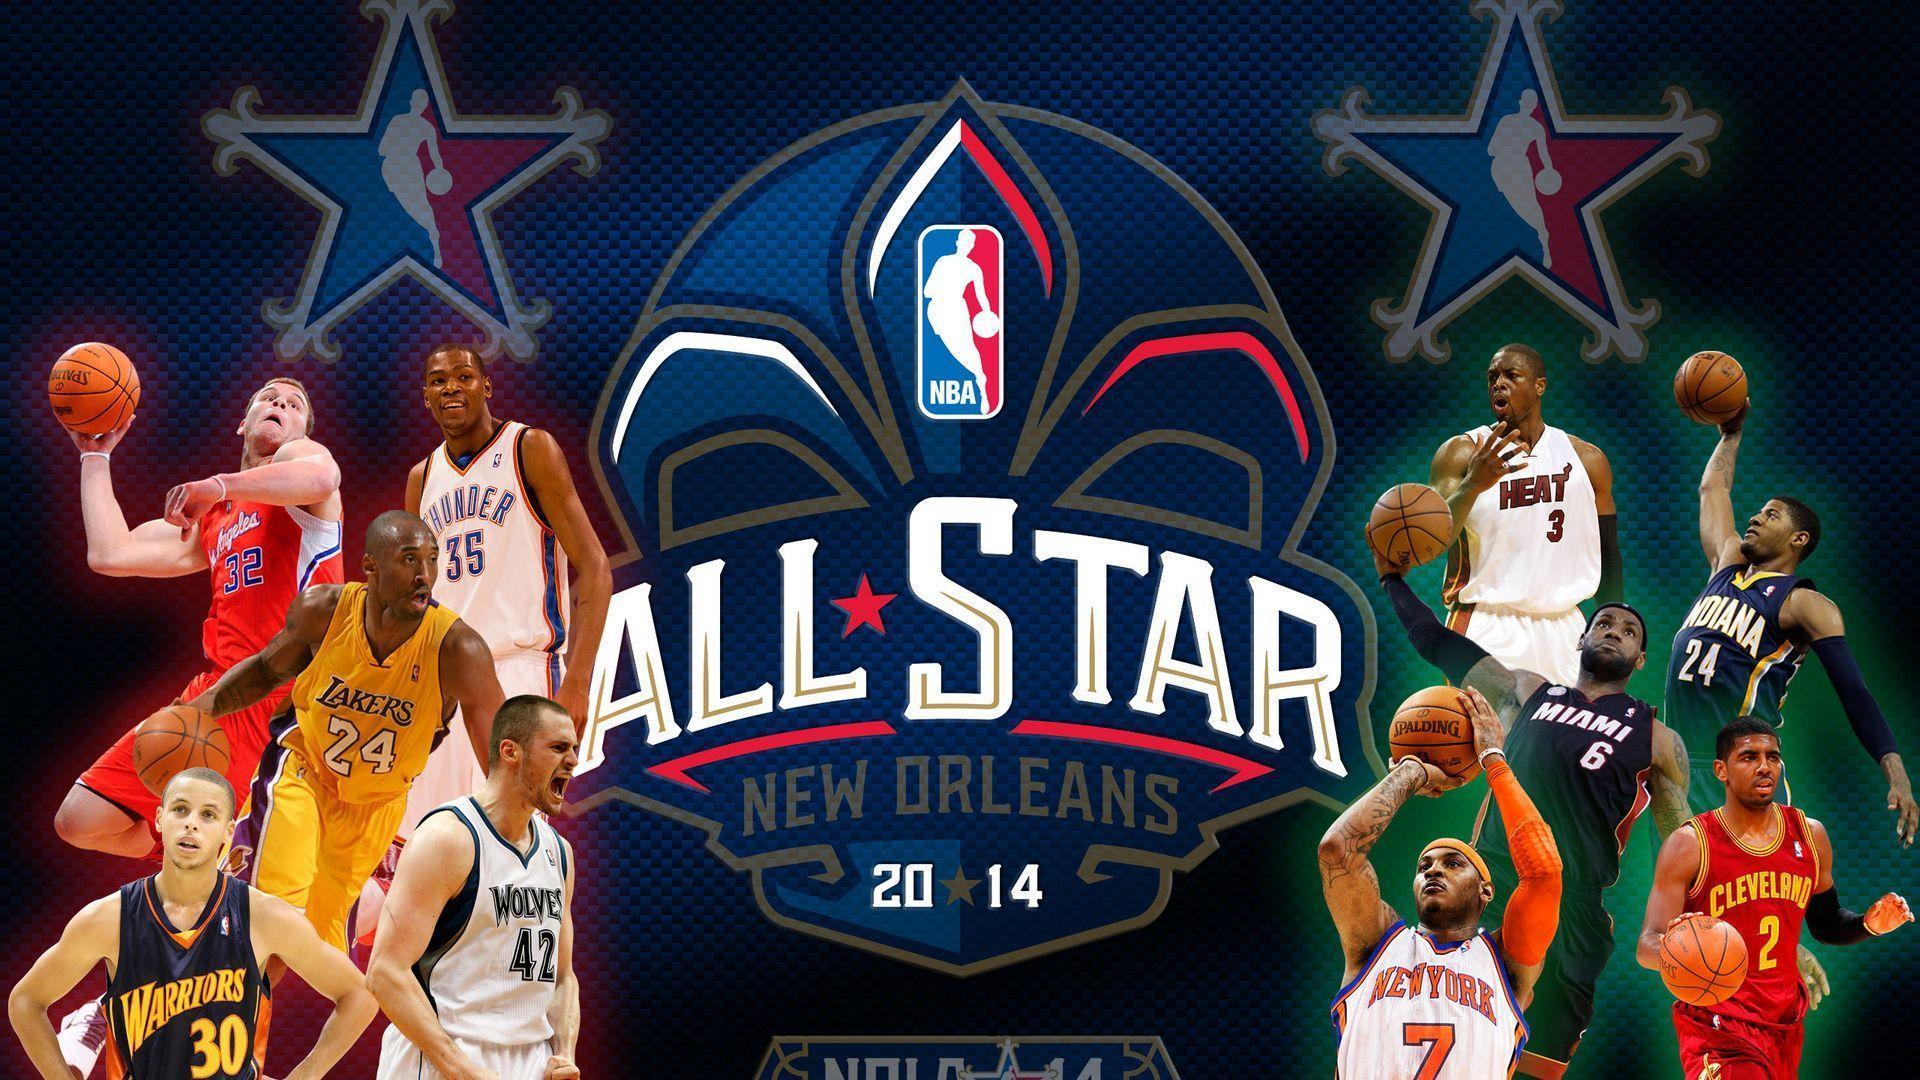 All Star Game, Nola Basketball, Basketball